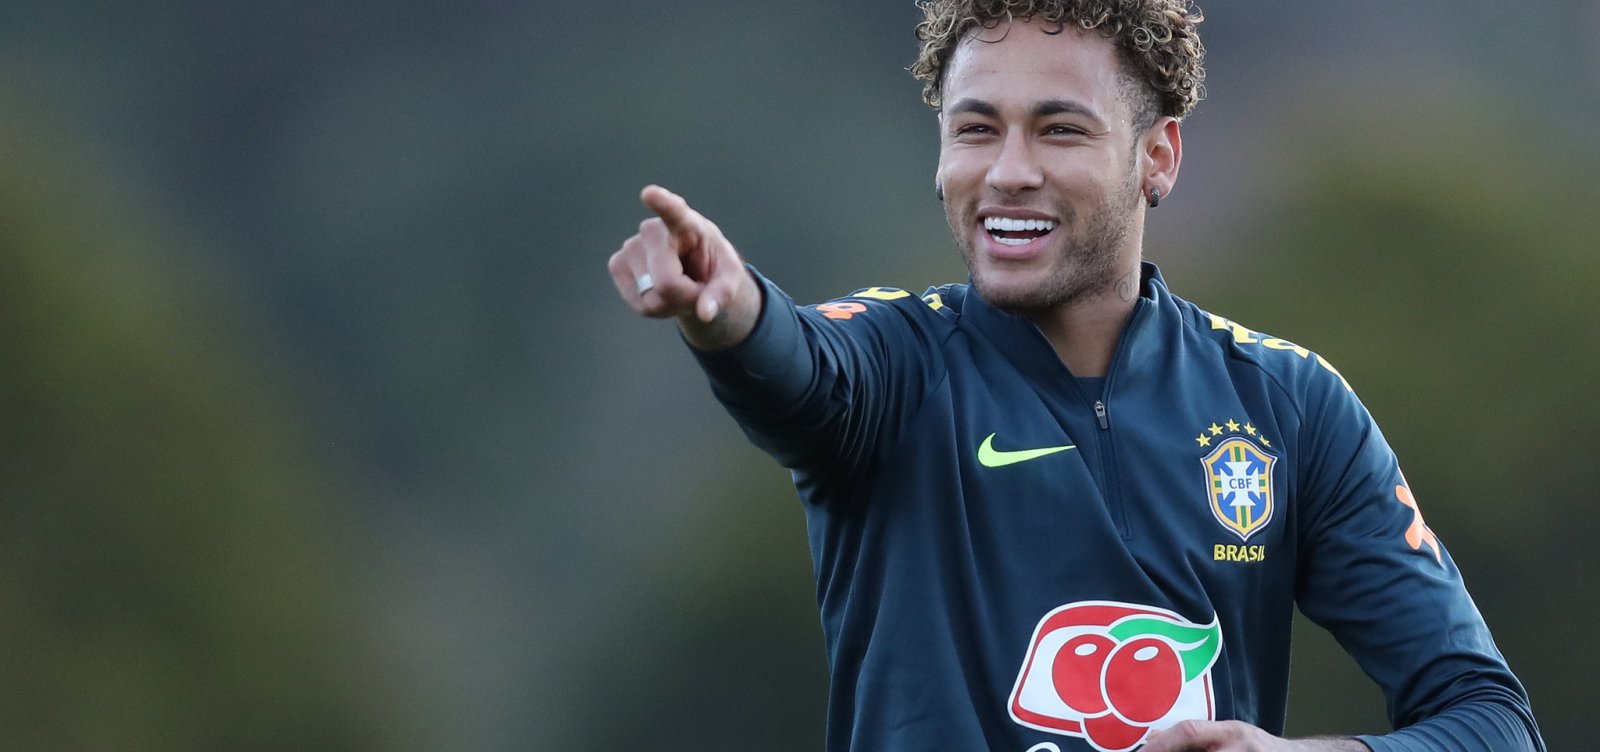 Seleção elogia preparação de Neymar, mas não garante atleta em amistosos